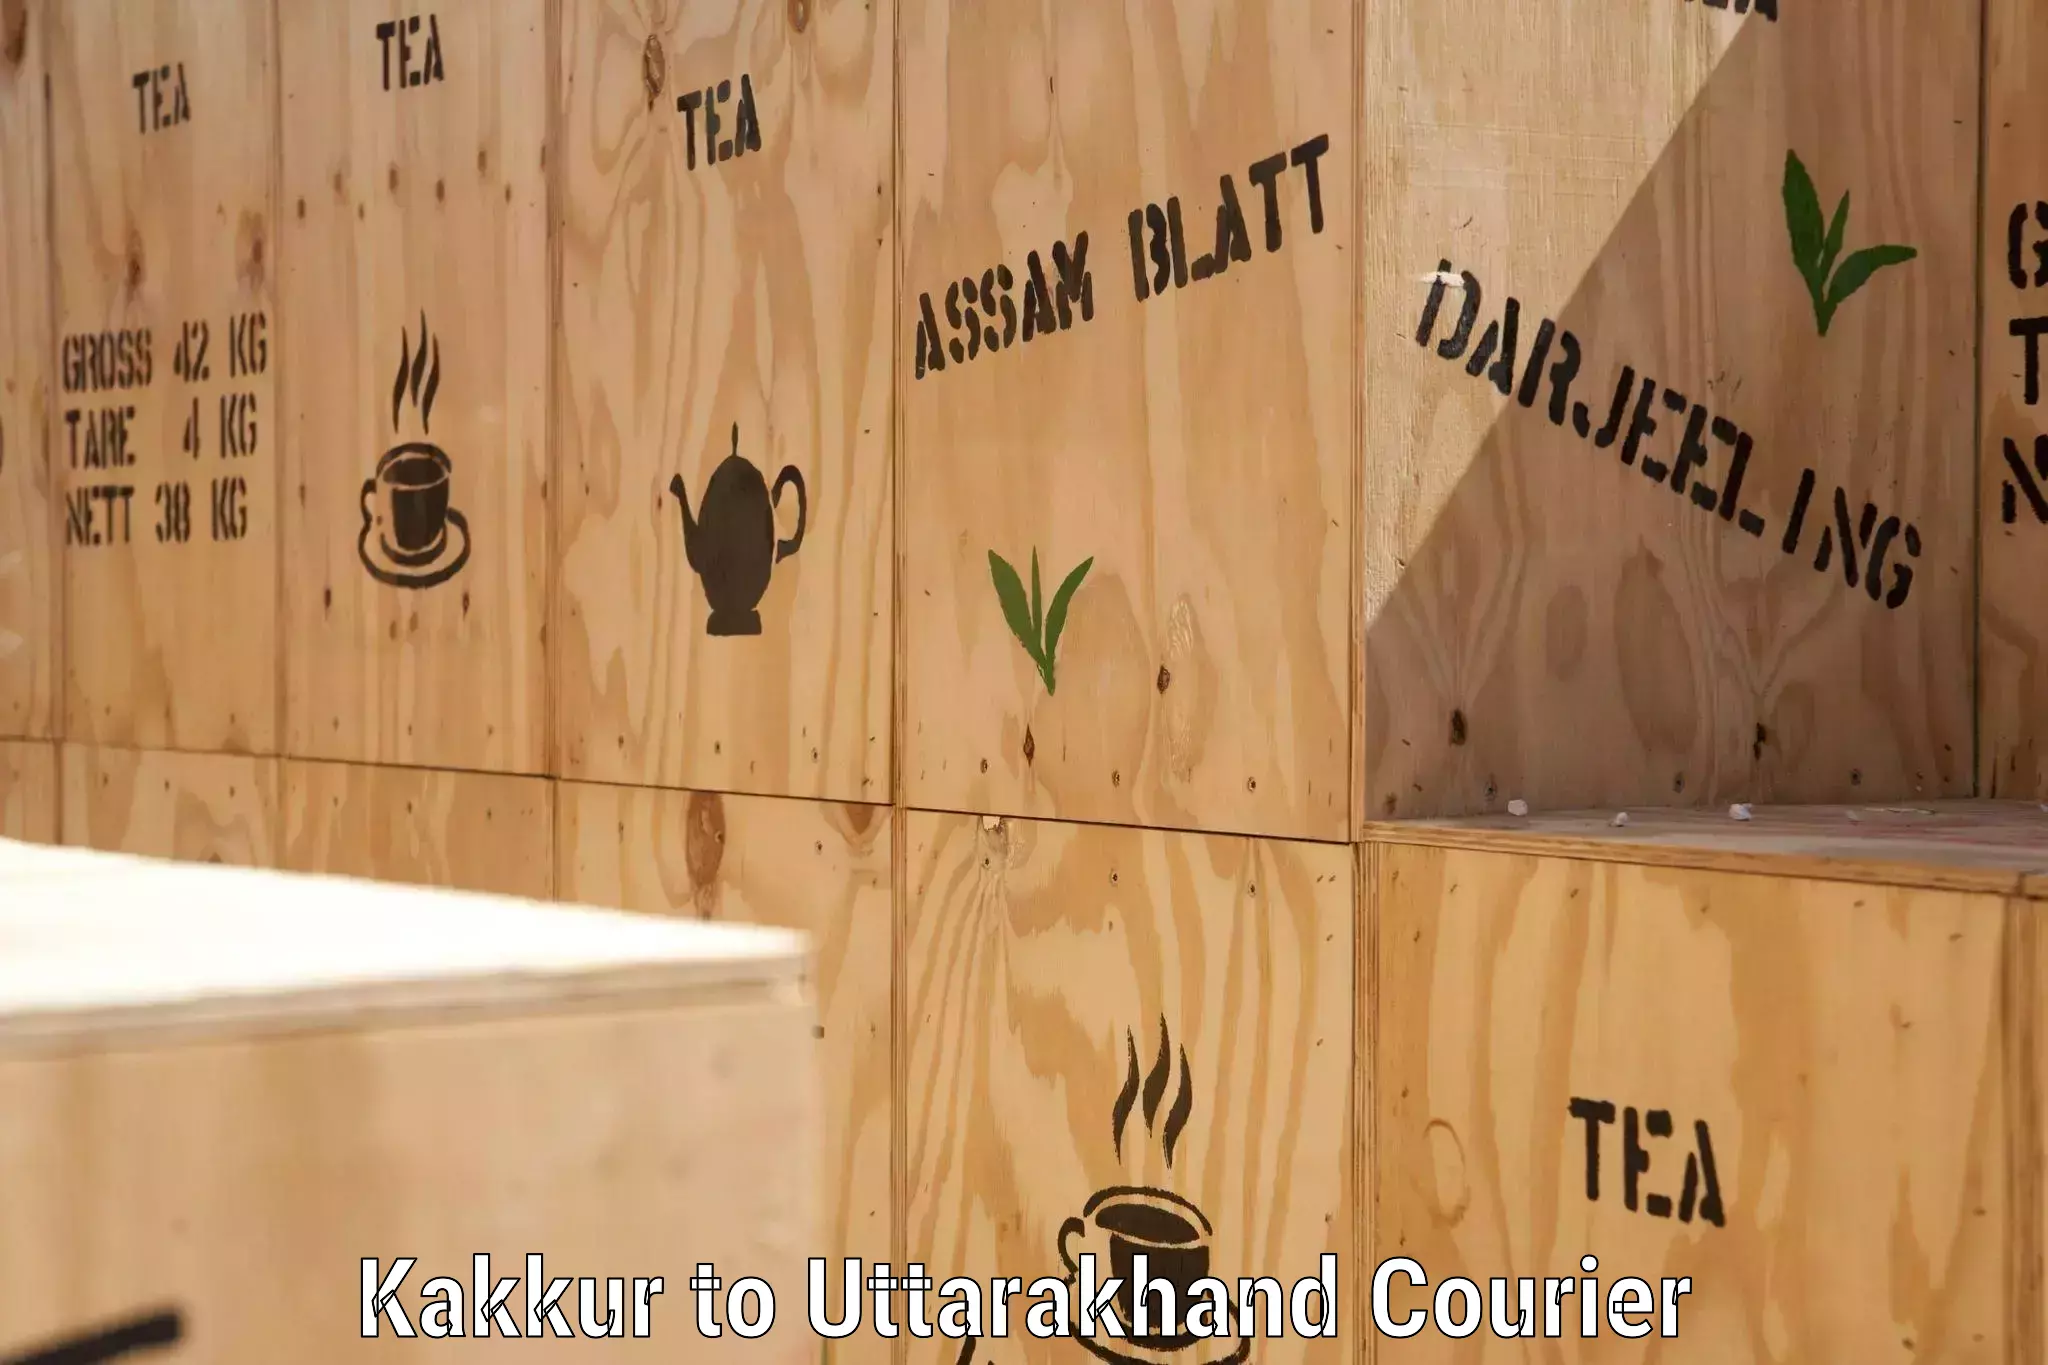 On-demand shipping options Kakkur to Uttarakhand